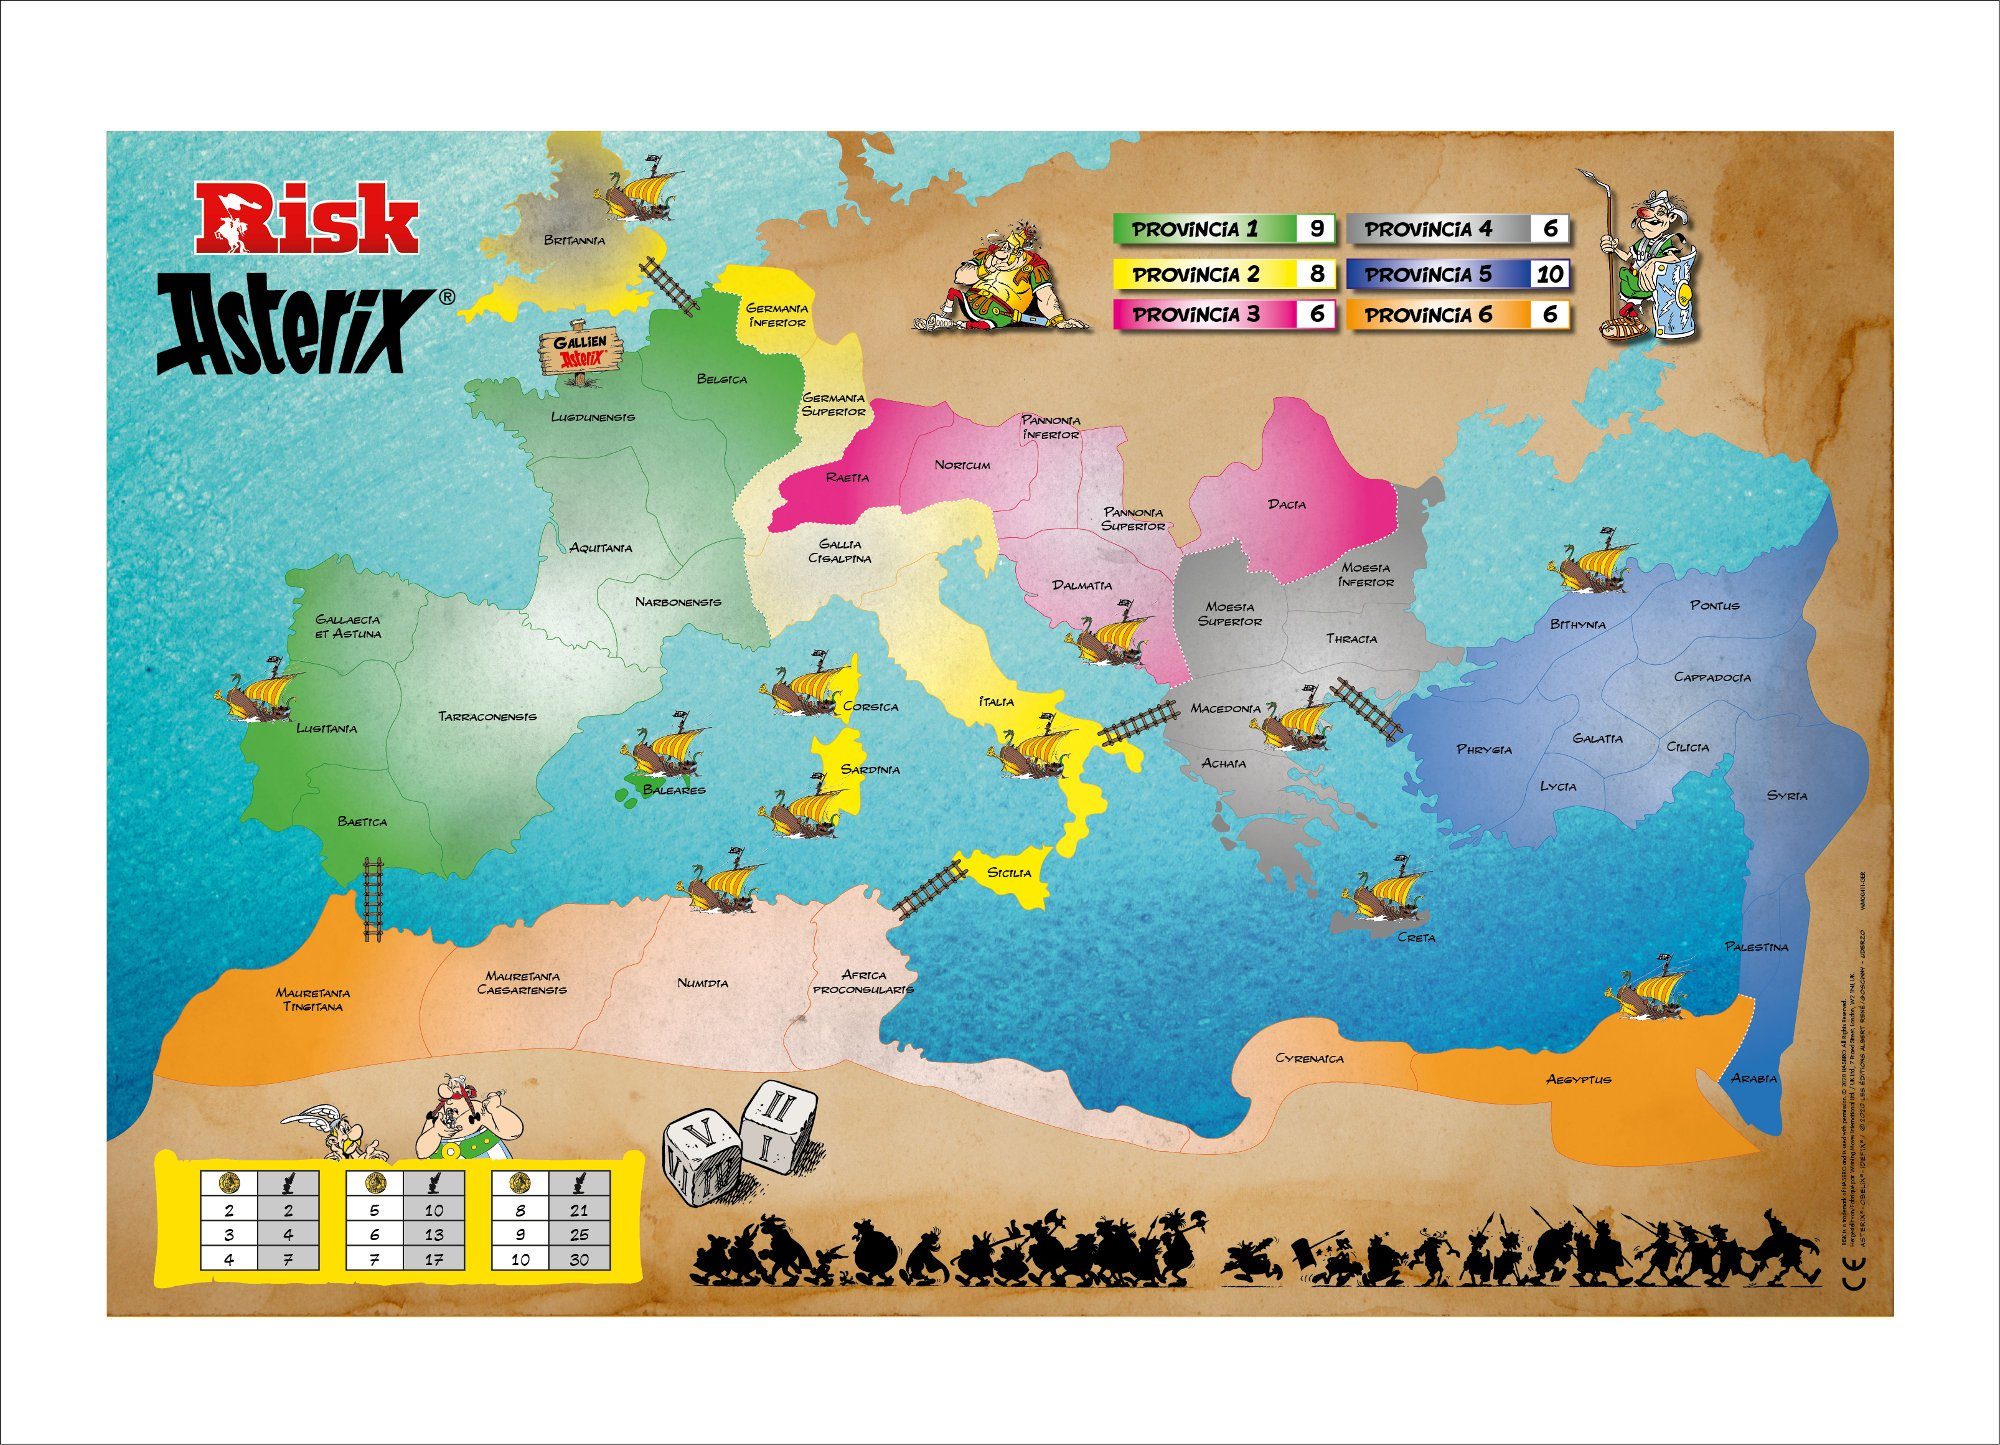 Winning Moves Spiel, Brettspiel Risiko und Asterix Edition, deutsch Collector's / französisch Obelix